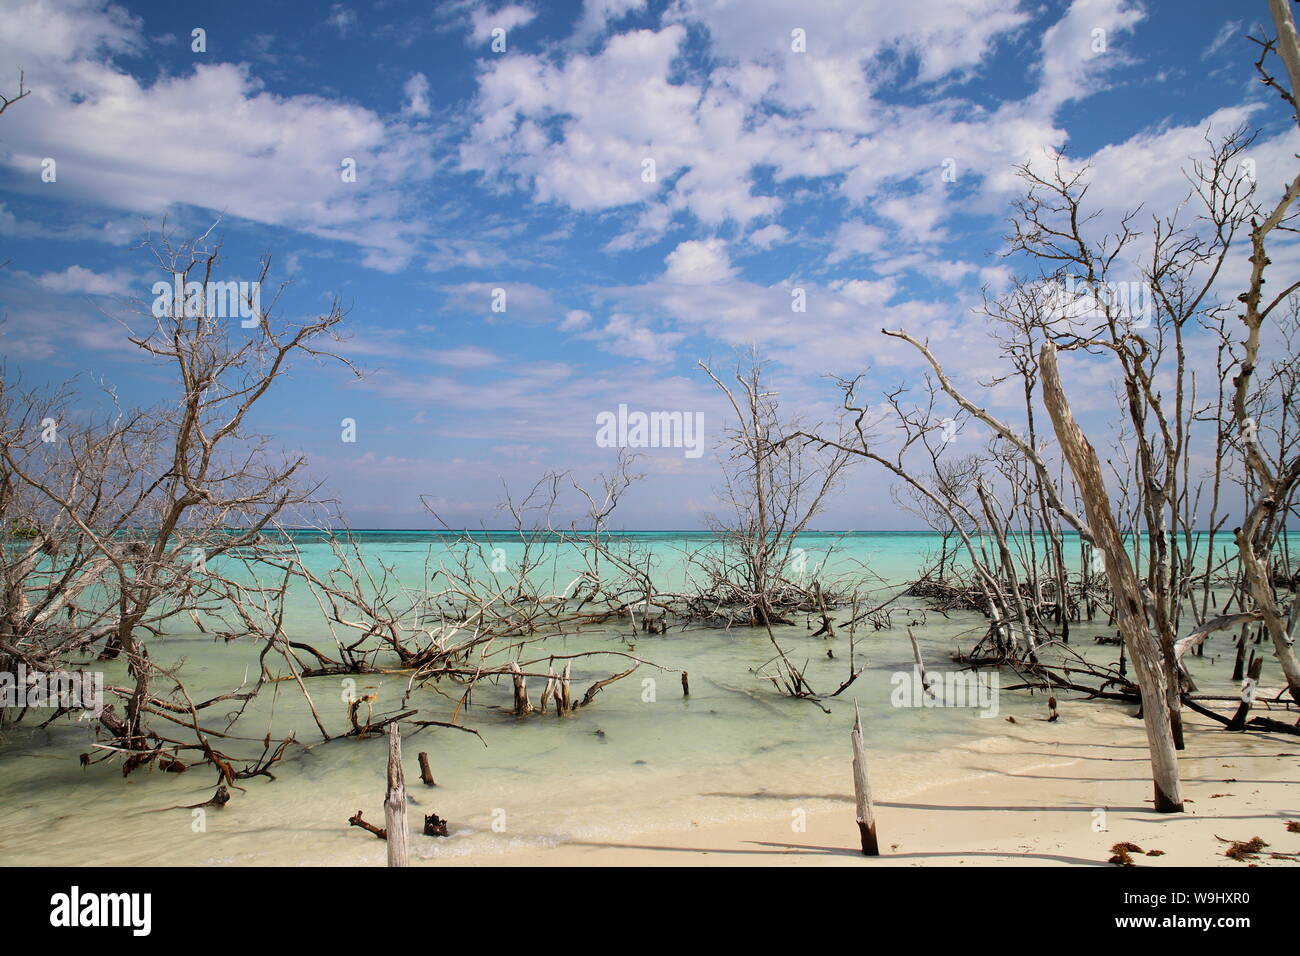 Playa de Cayo Levisa en Pinar del Rio, Cuba Stock Photo - Alamy